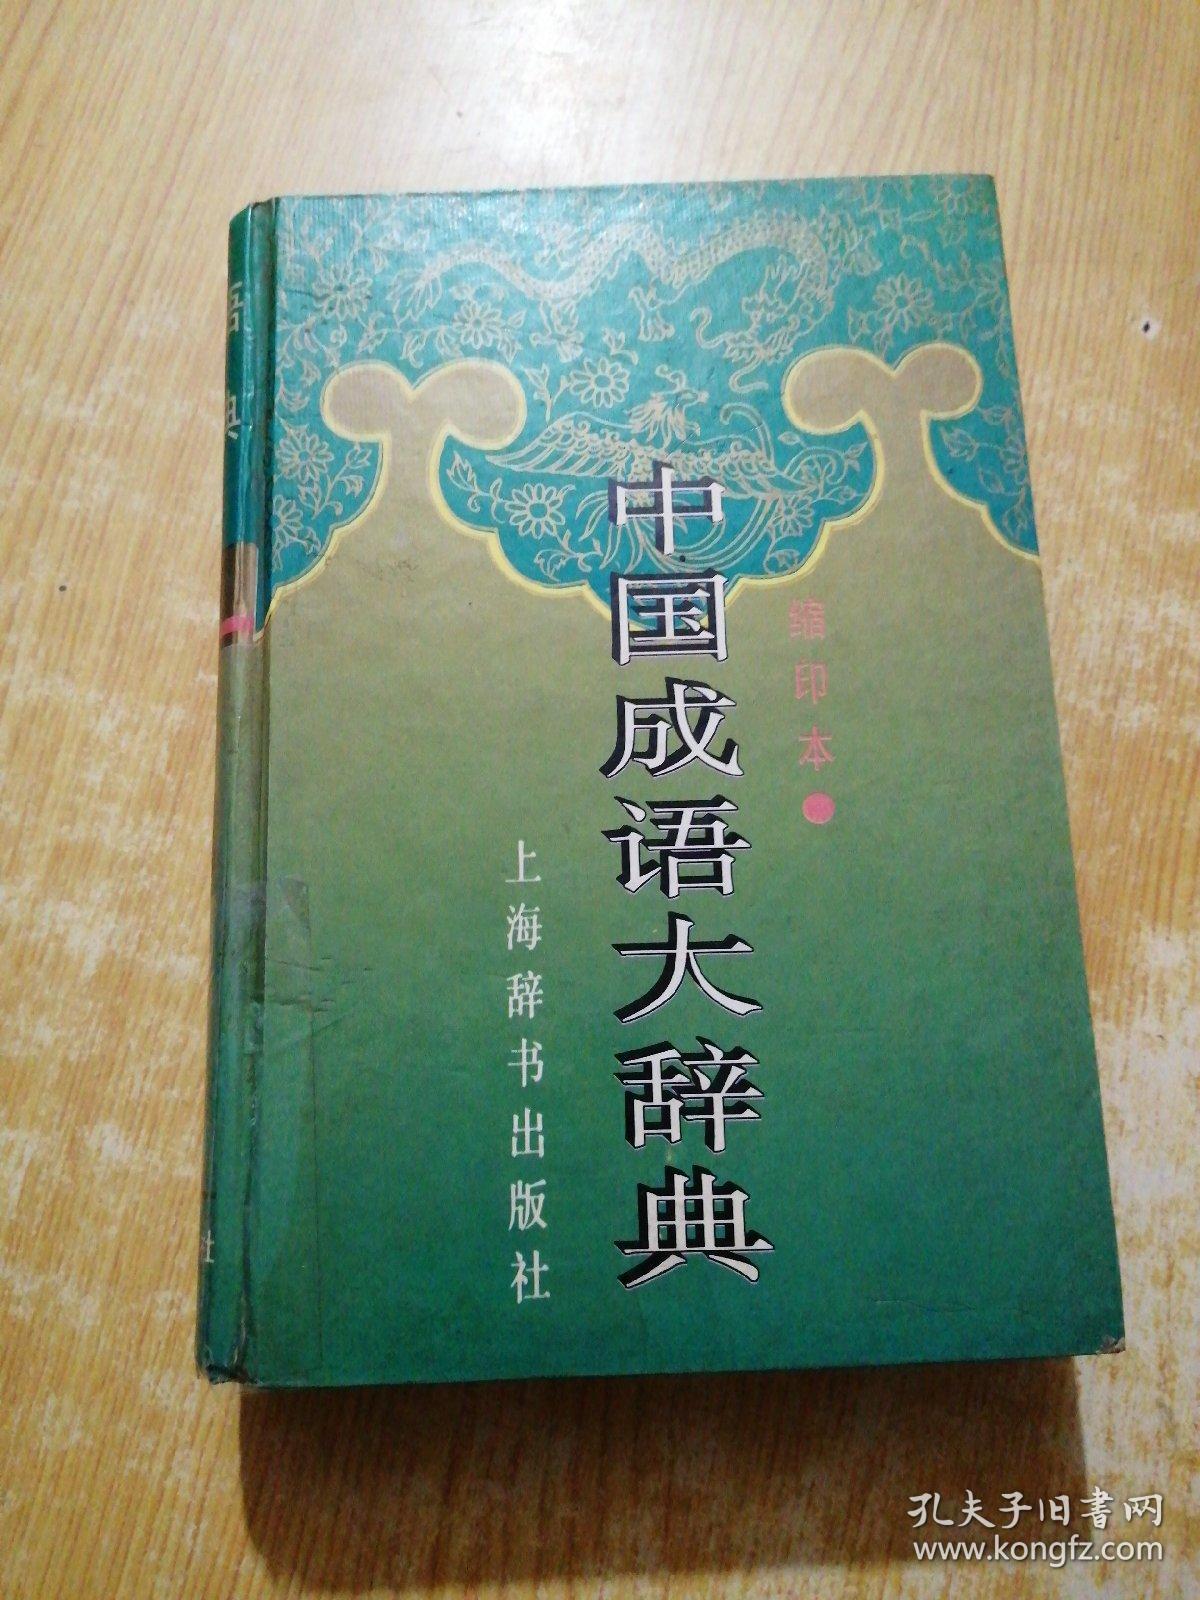 中国成语大辞典(缩印本)